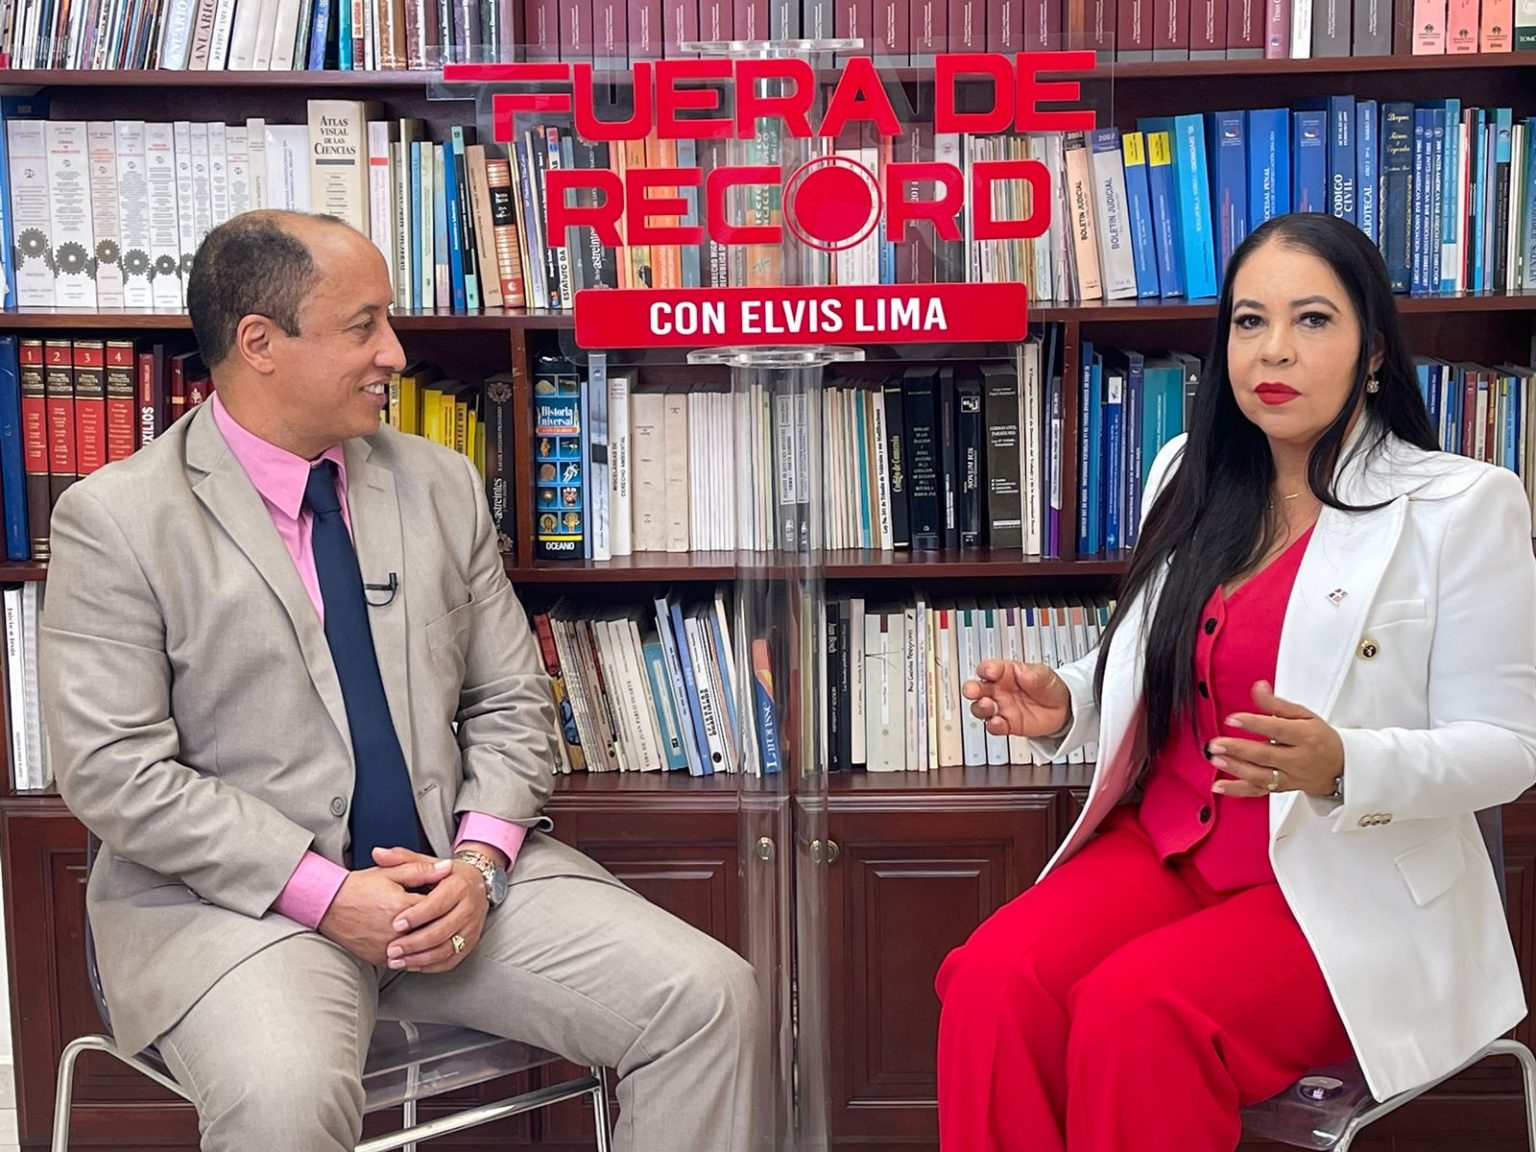 Carmen Herrera hablo sobre la participacion femenina en las elecciones y feminicidios al ser entrevistada por el periodista Elvis Lima